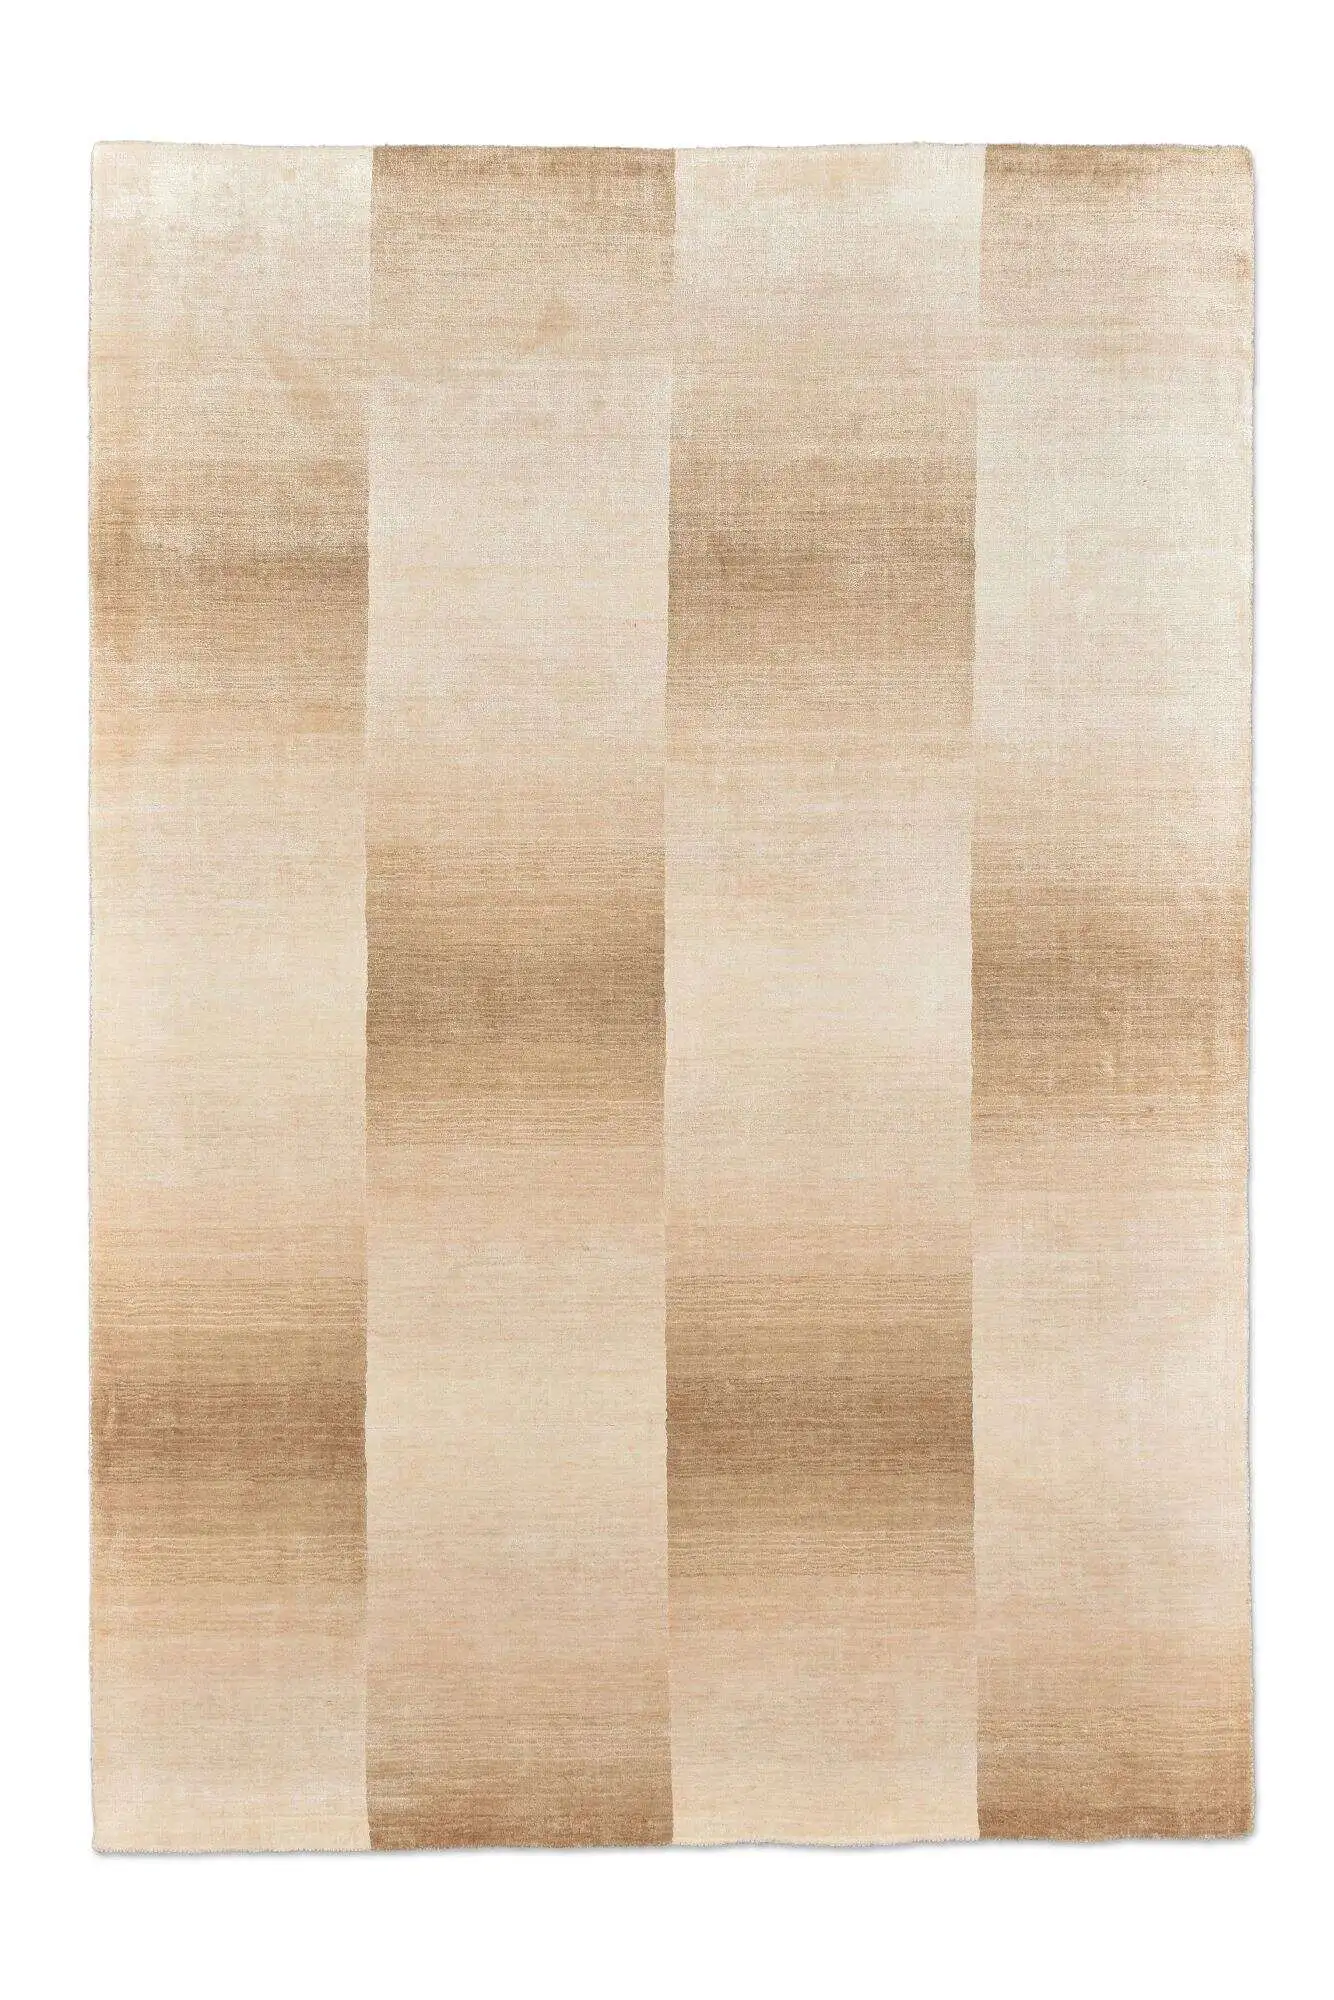 Design Teppich 160x230cm Palmyra Handgearbeitet Viskose beige